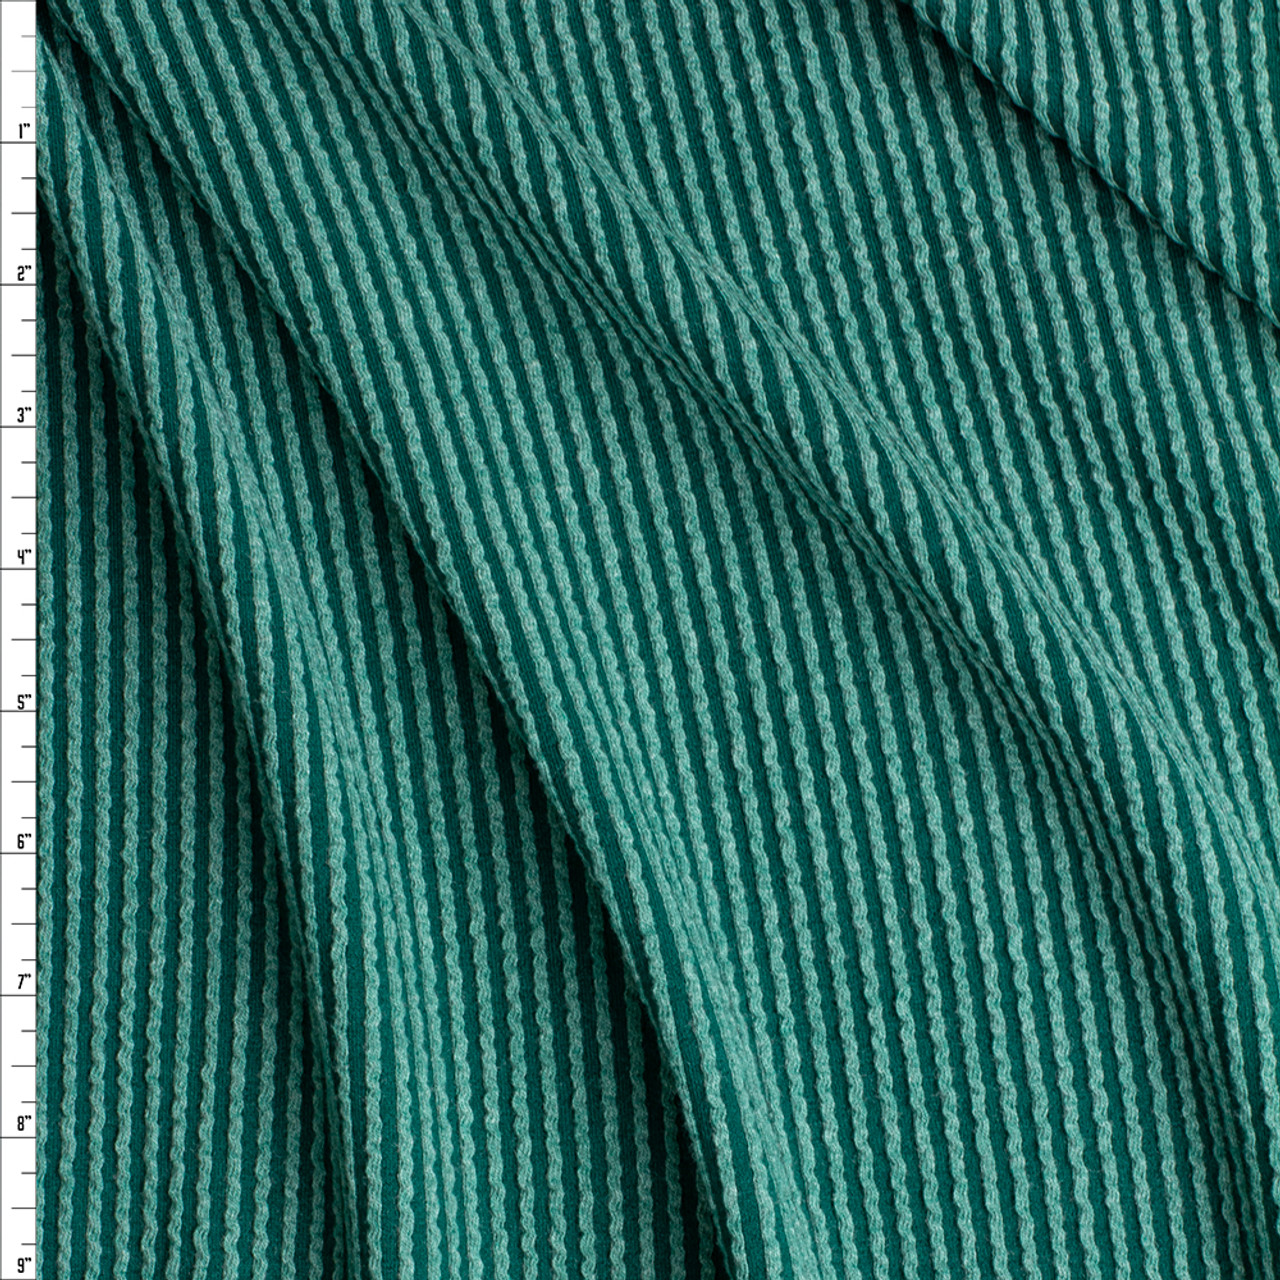 Cali Fabrics Emerald Green Stretch Wavy Rib Knit #26973 Fabric by the Yard